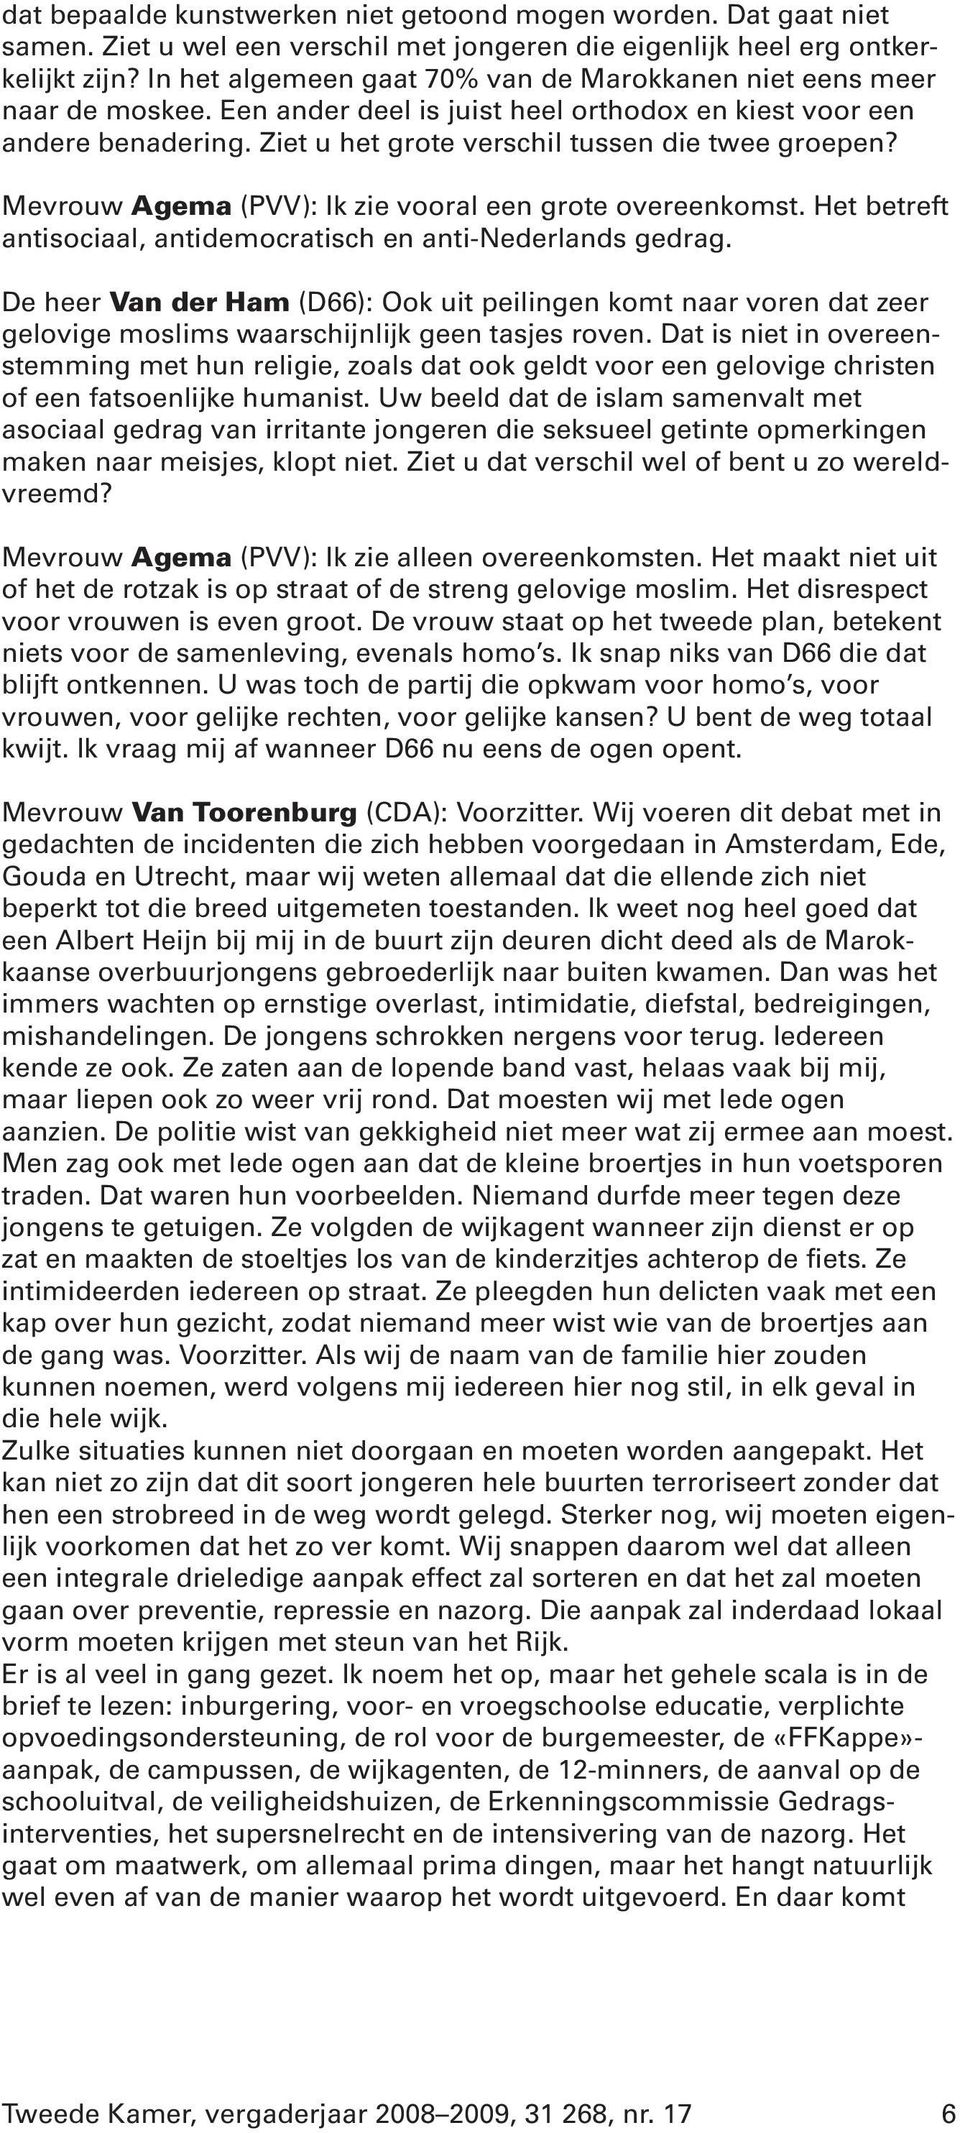 Mevrouw Agema (PVV): Ik zie vooral een grote overeenkomst. Het betreft antisociaal, antidemocratisch en anti-nederlands gedrag.